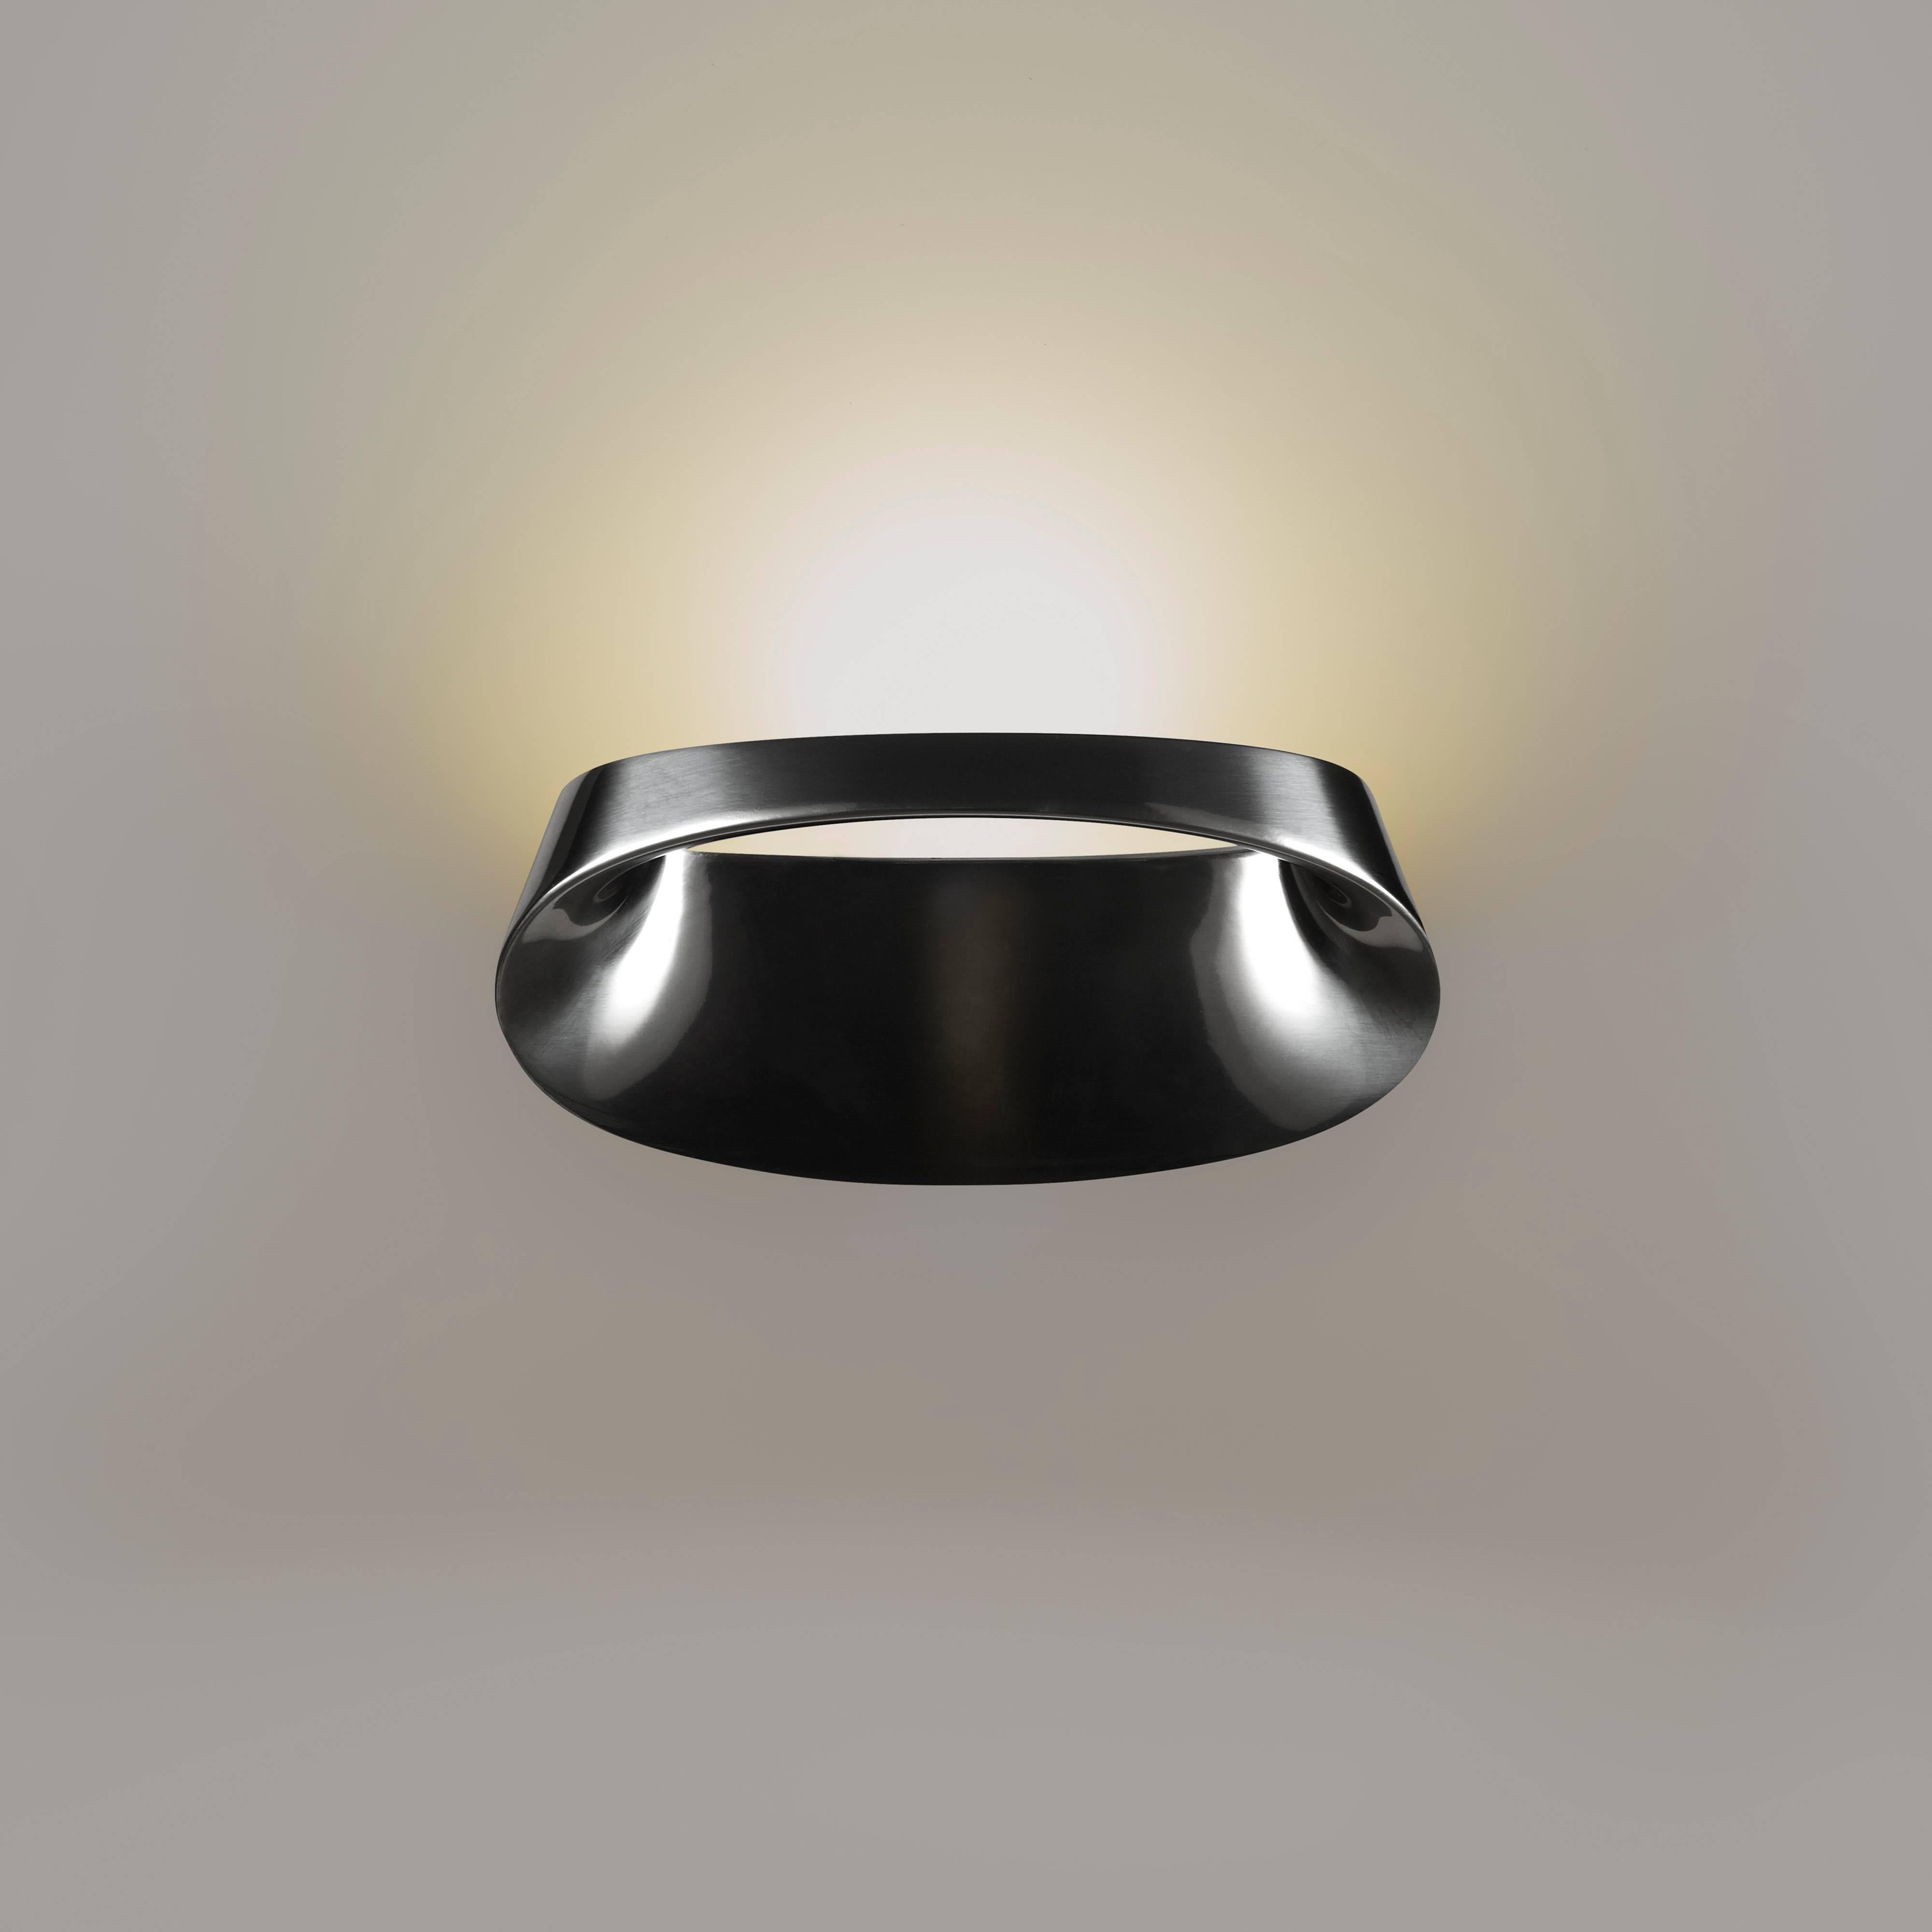 Fabriquée en 2017 par Fontana Arte et conçue par Odo Fioravanti en 2014, l'applique Bonnet en aluminium poli retravaille le concept d'éclairage indirect. La partie supérieure dissimule une petite mais très puissante source de Led dont le rayon